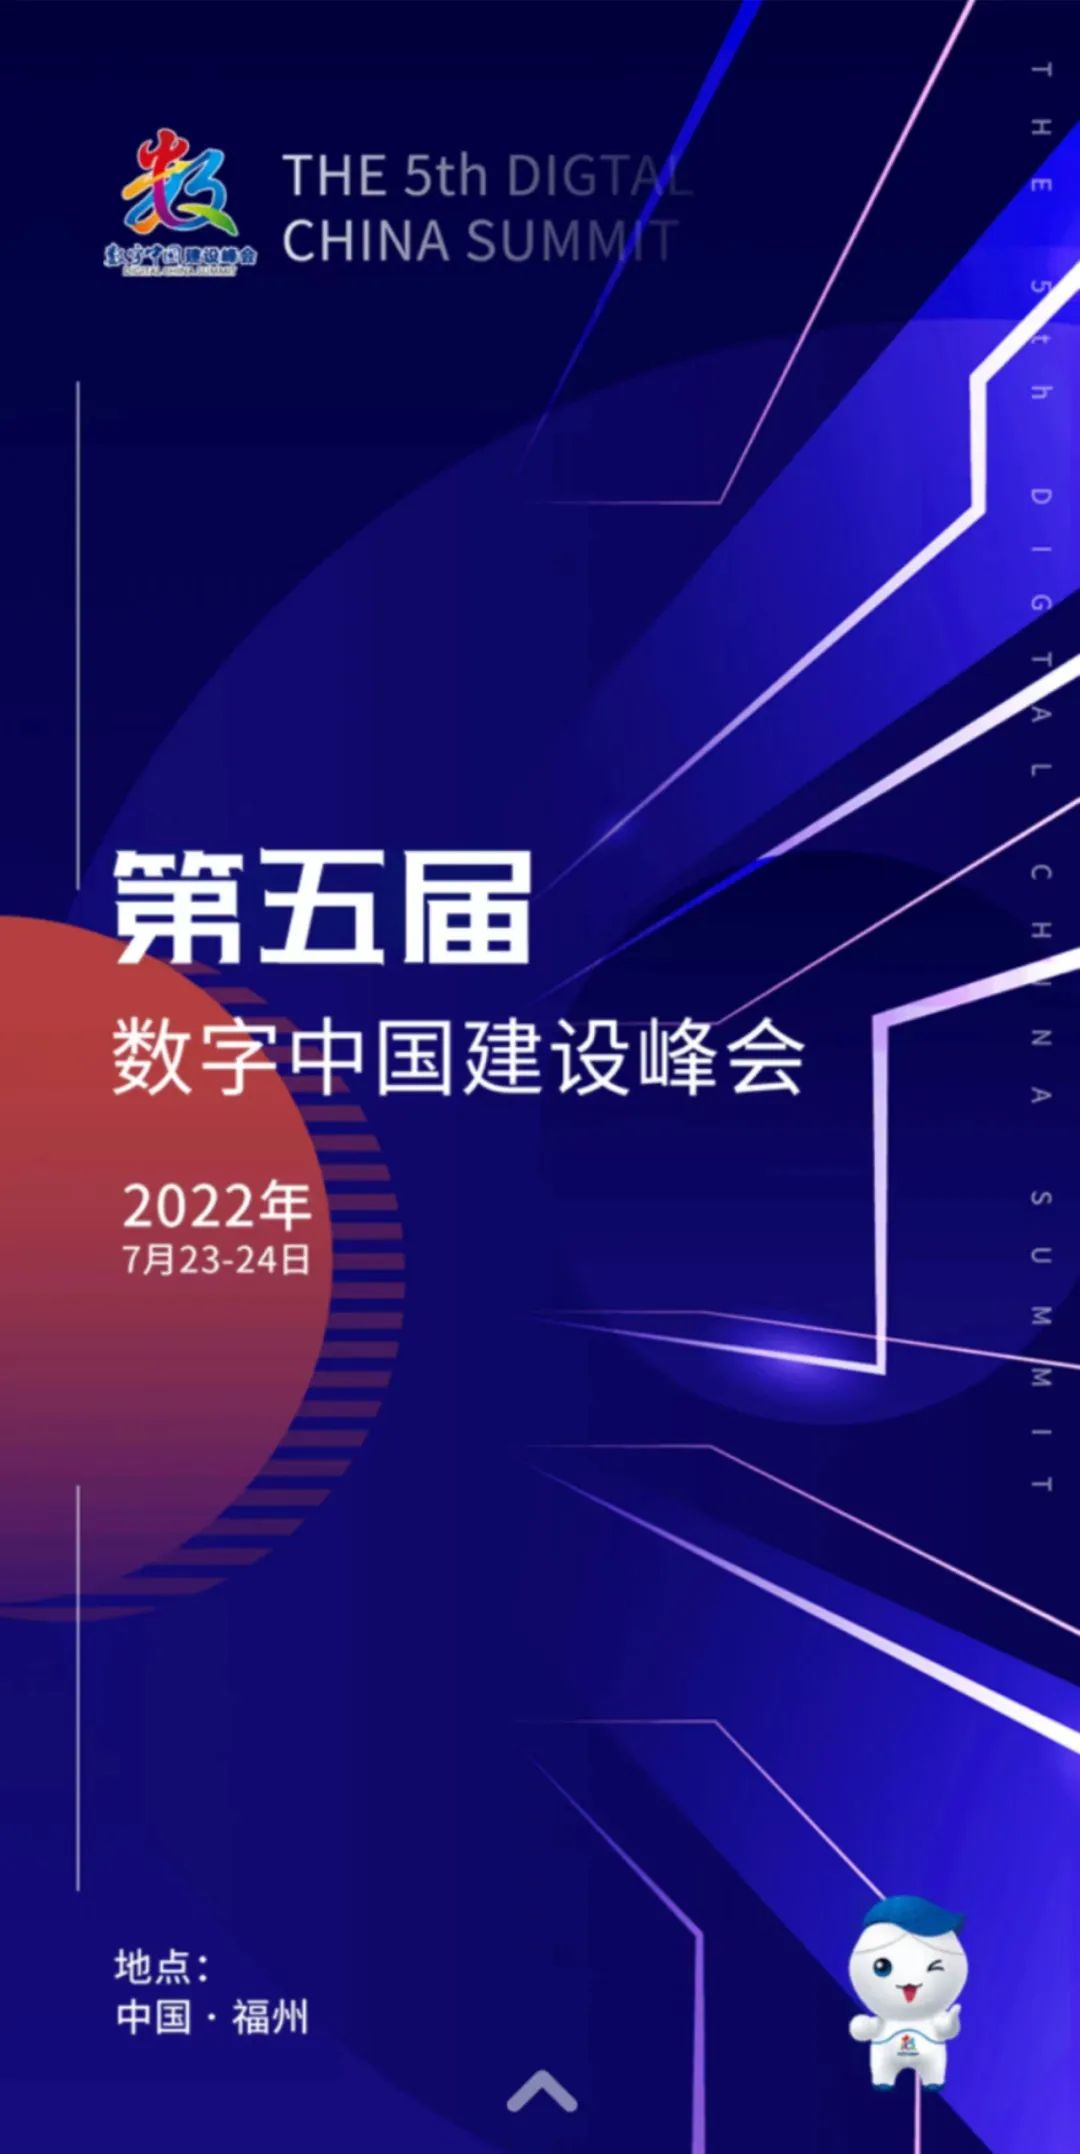 黄坤明出席第五届数字中国建设峰会开幕式时强调 在数字化发展浪潮中把握新机遇、应对新挑战、塑造新优势